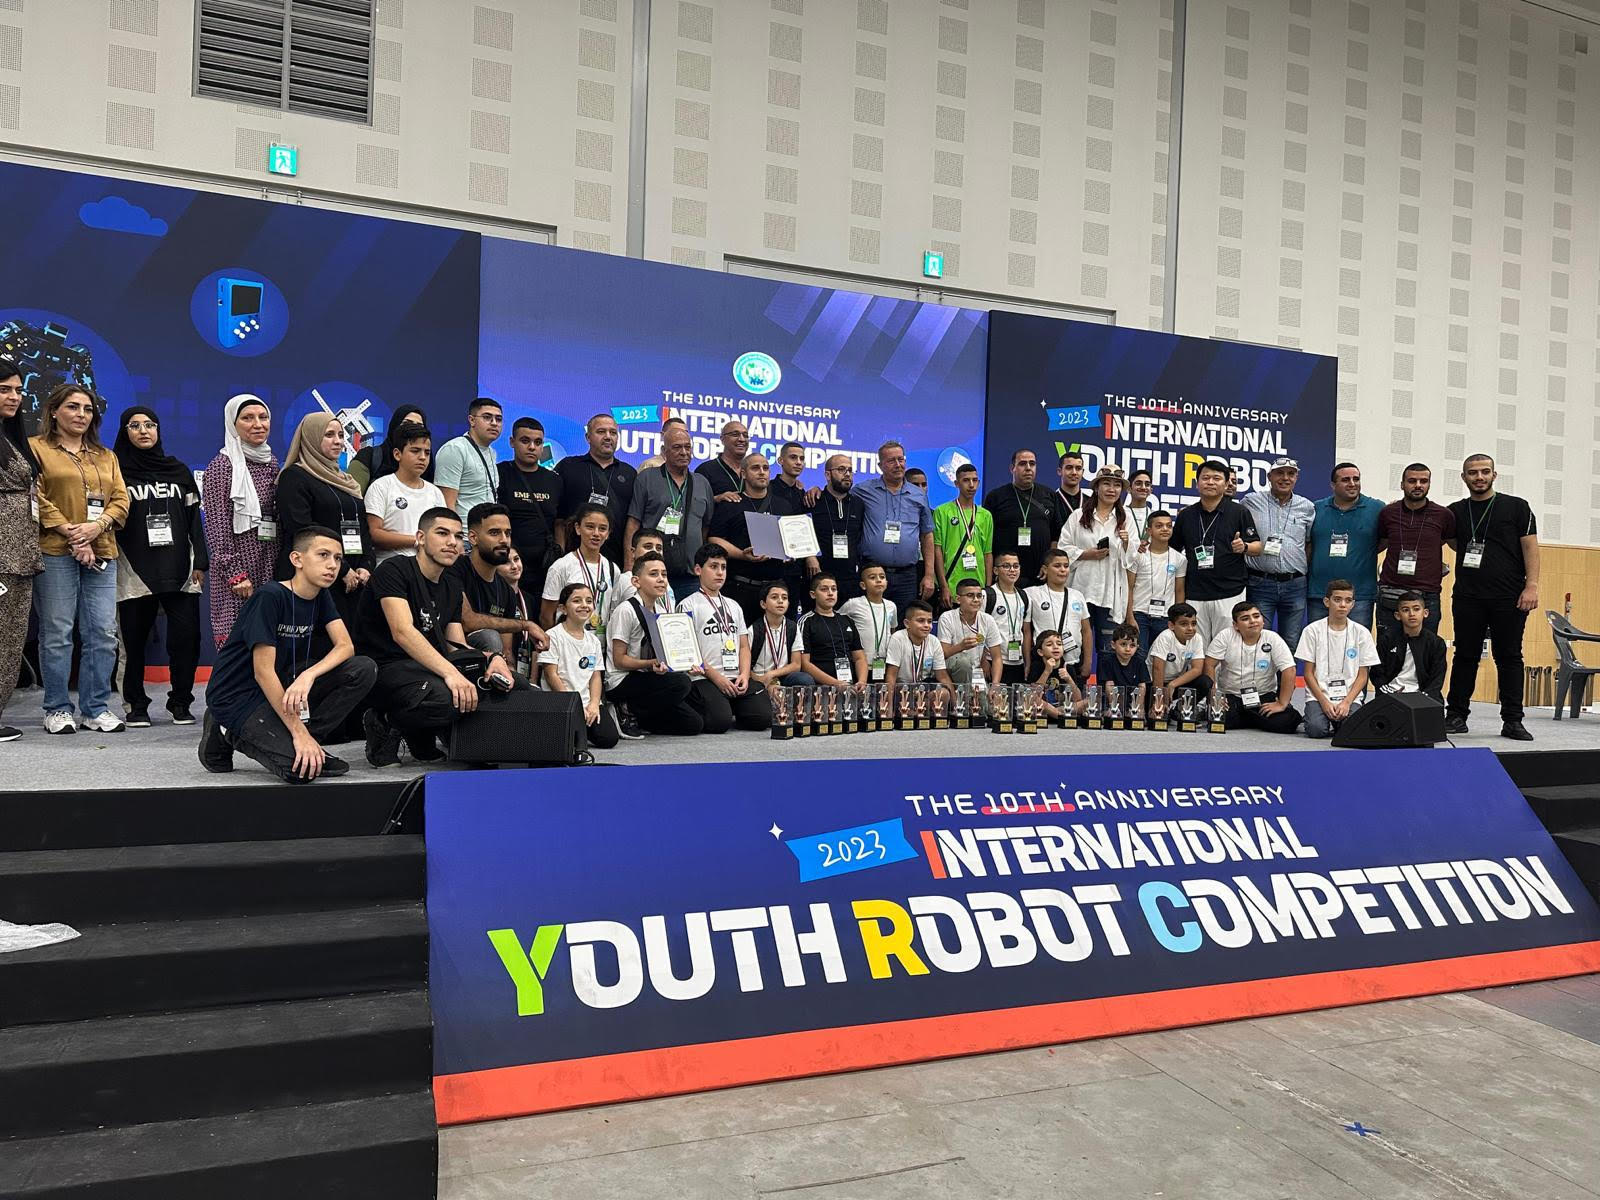 انجاز مشرف للطالب قاسم وسام شواهنة في بطولة العالم للروبوتيكا في كوريا 